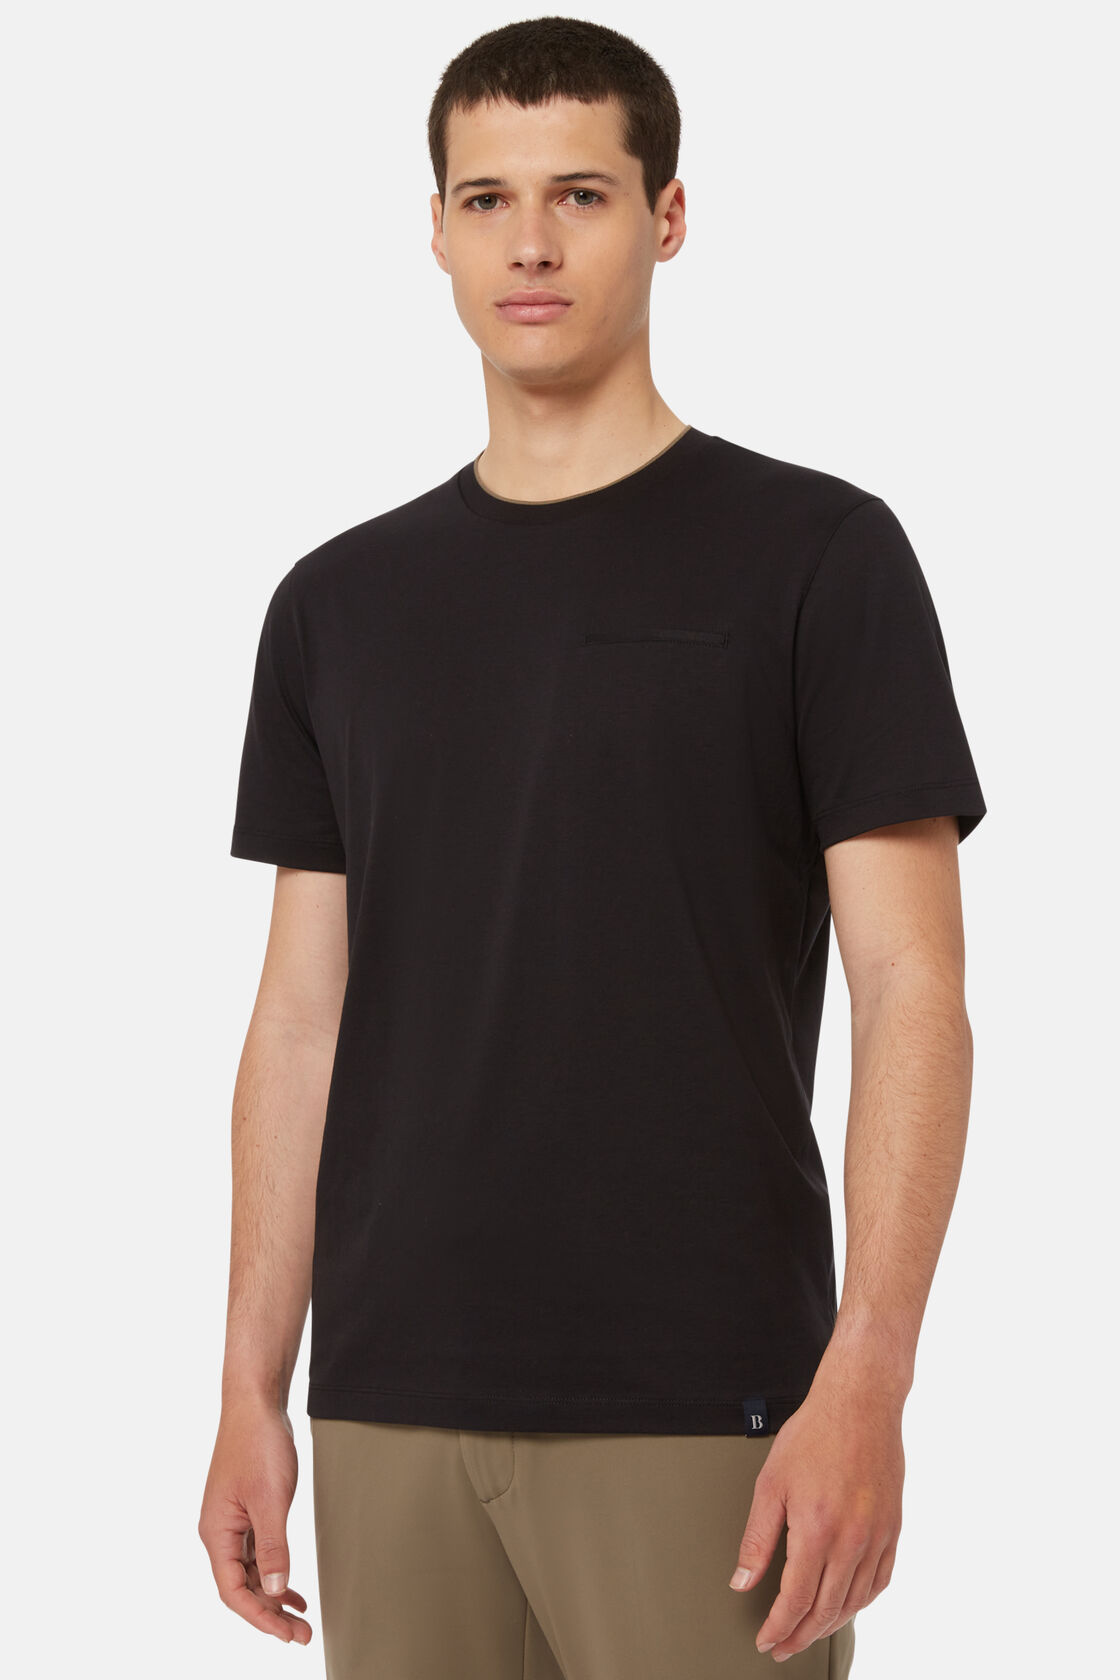 Camiseta De Punto Jersey De Algodón Tencel, Negro, hi-res